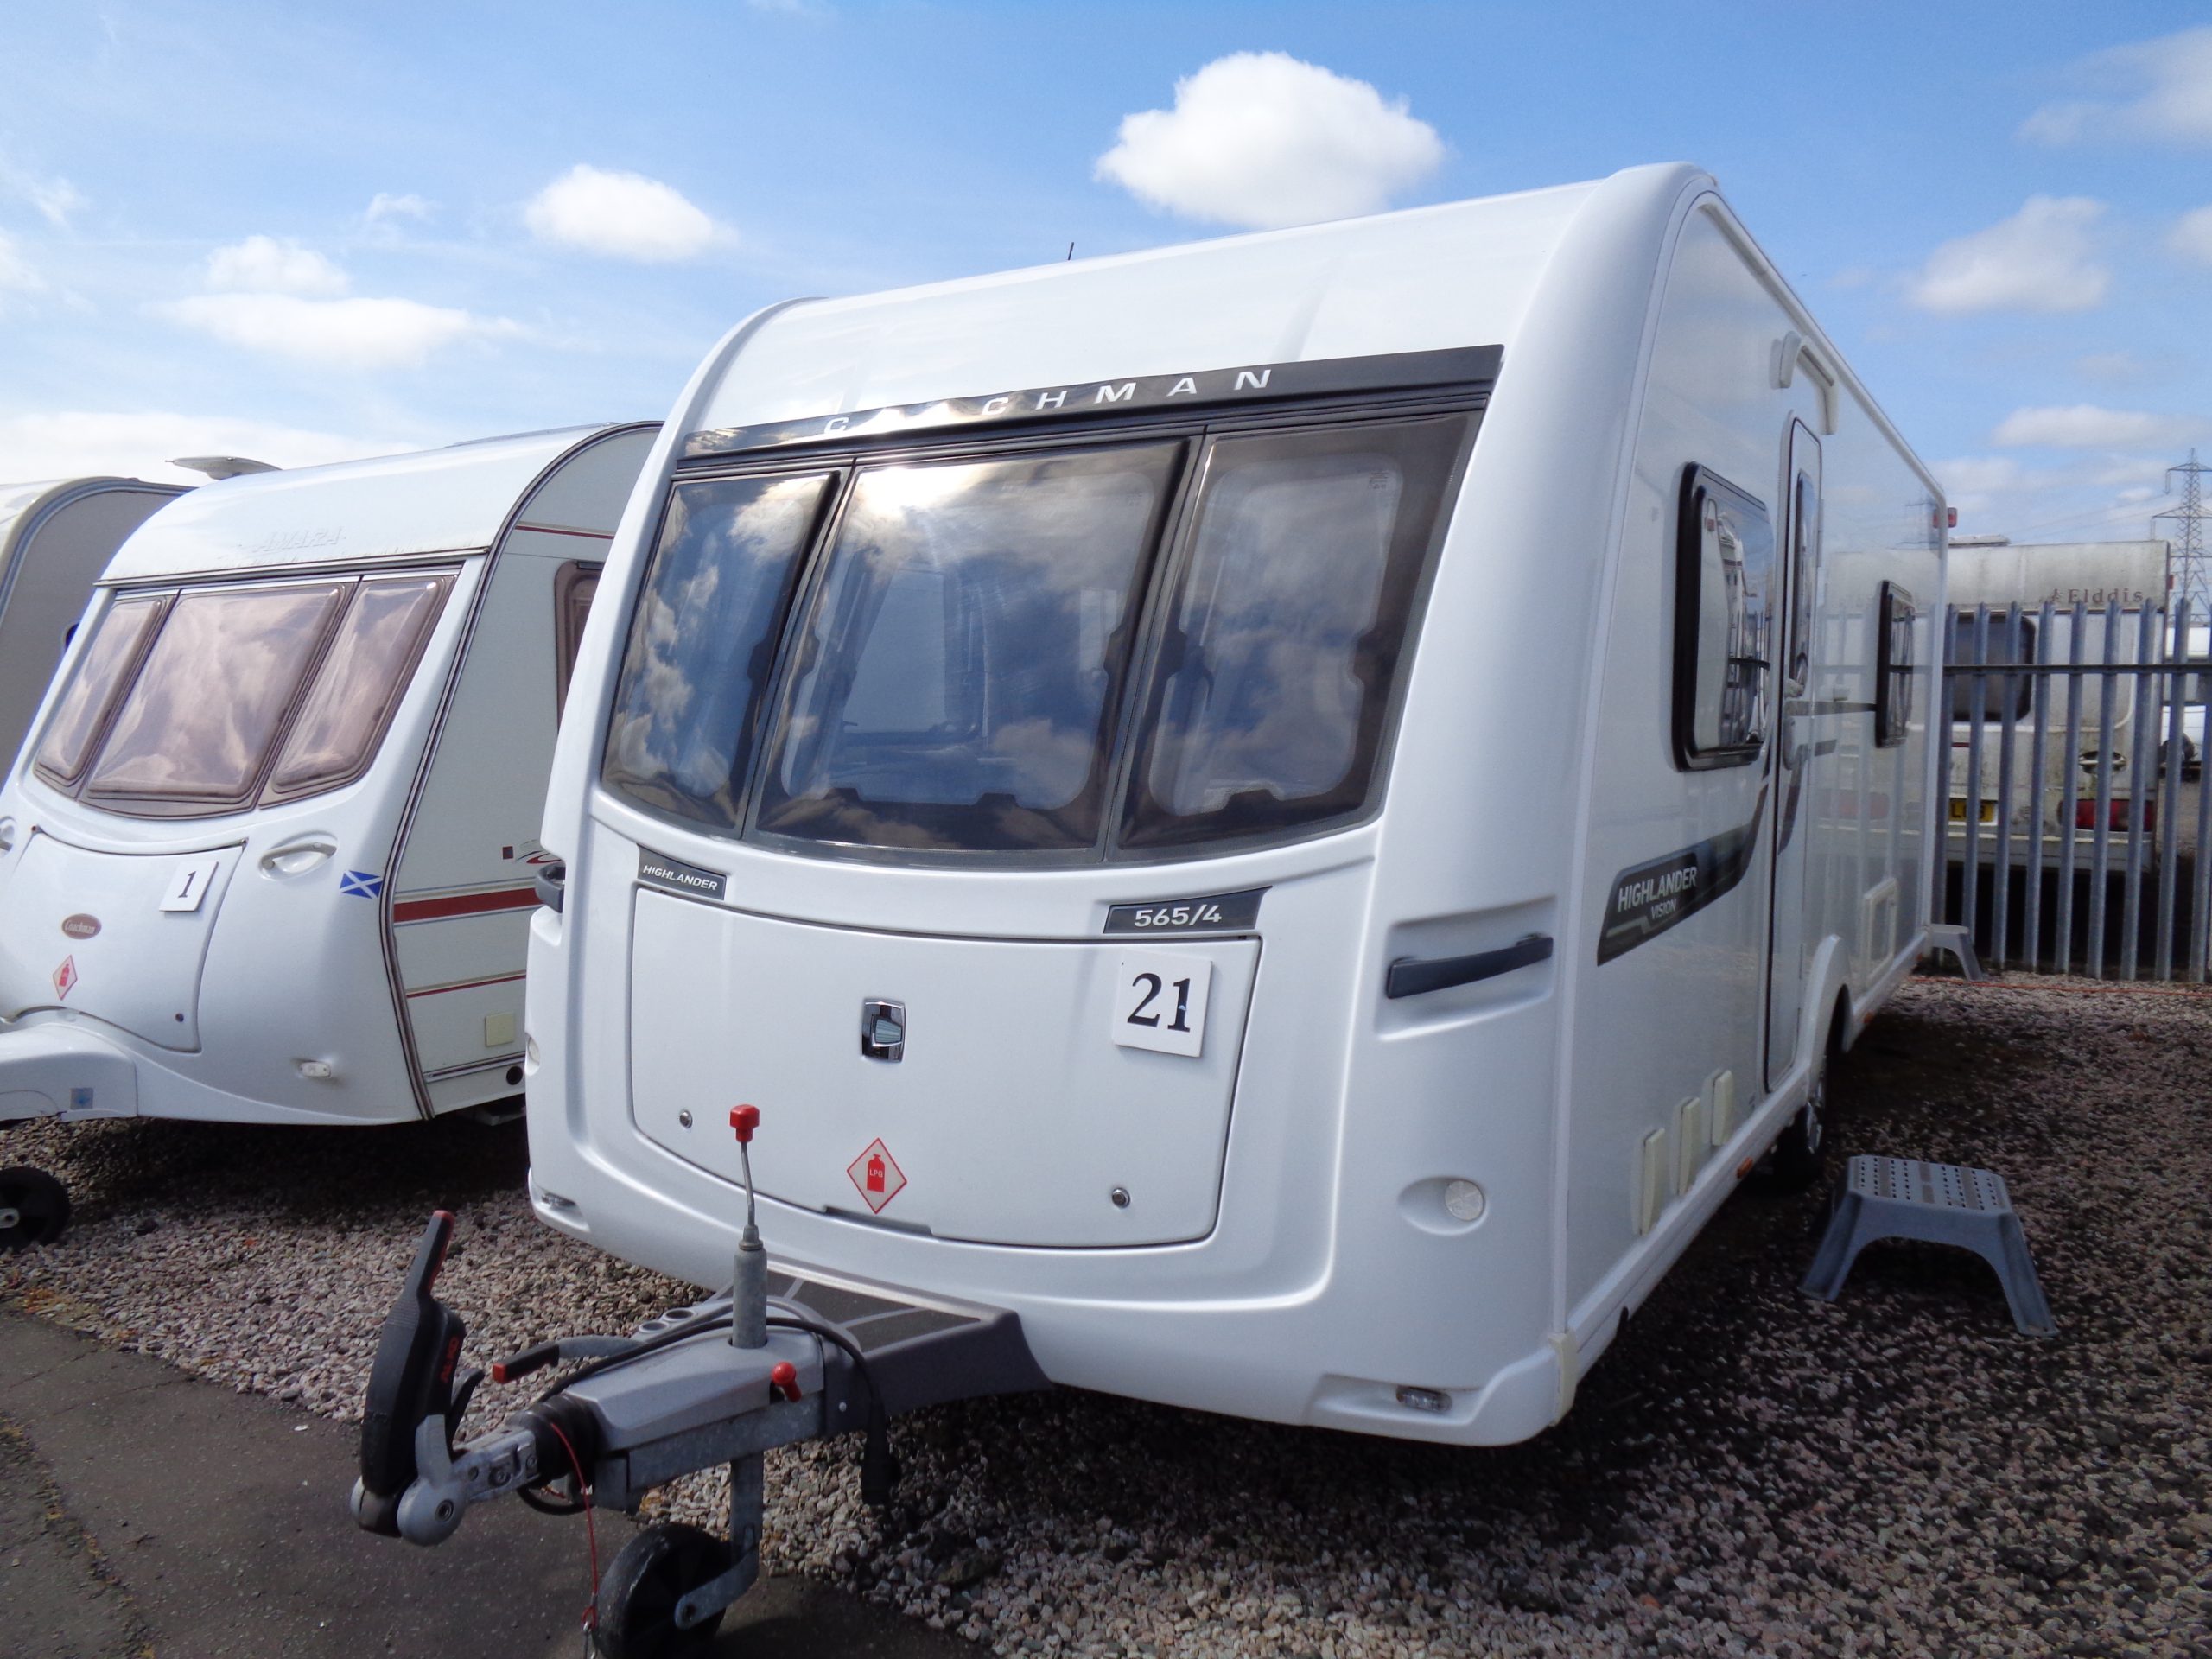 Caravan No. 21 – 2014 Coachman Vision Highlander 565/4, 4 berth £17,500